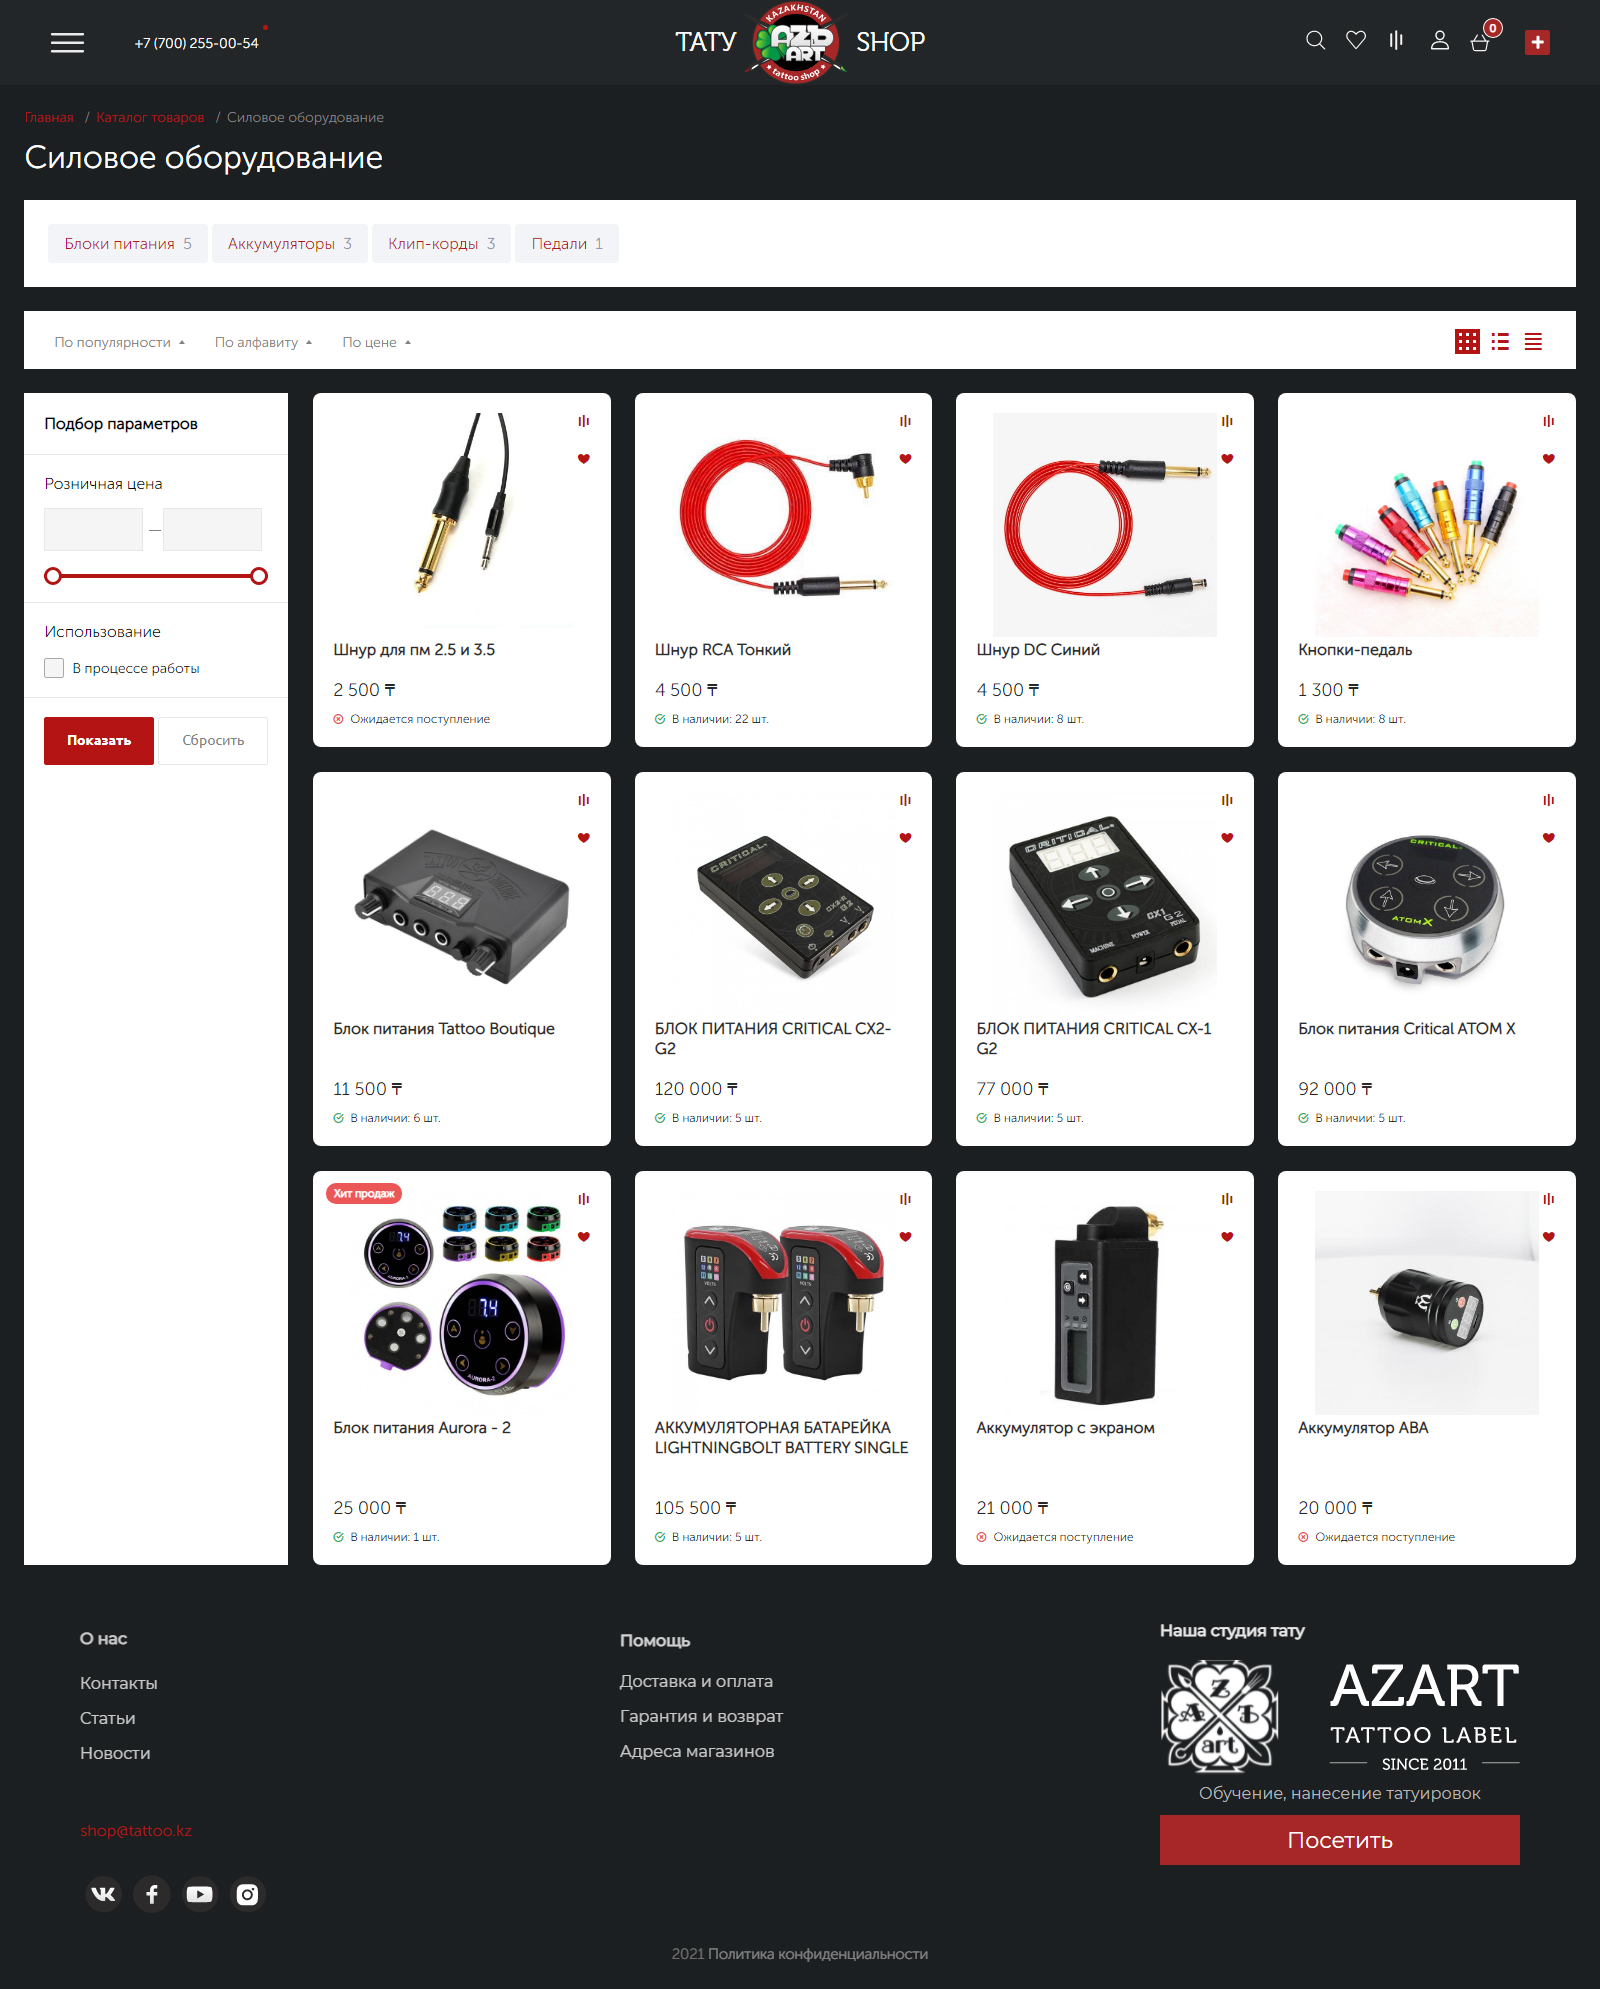 интернет-магазин azъ-art